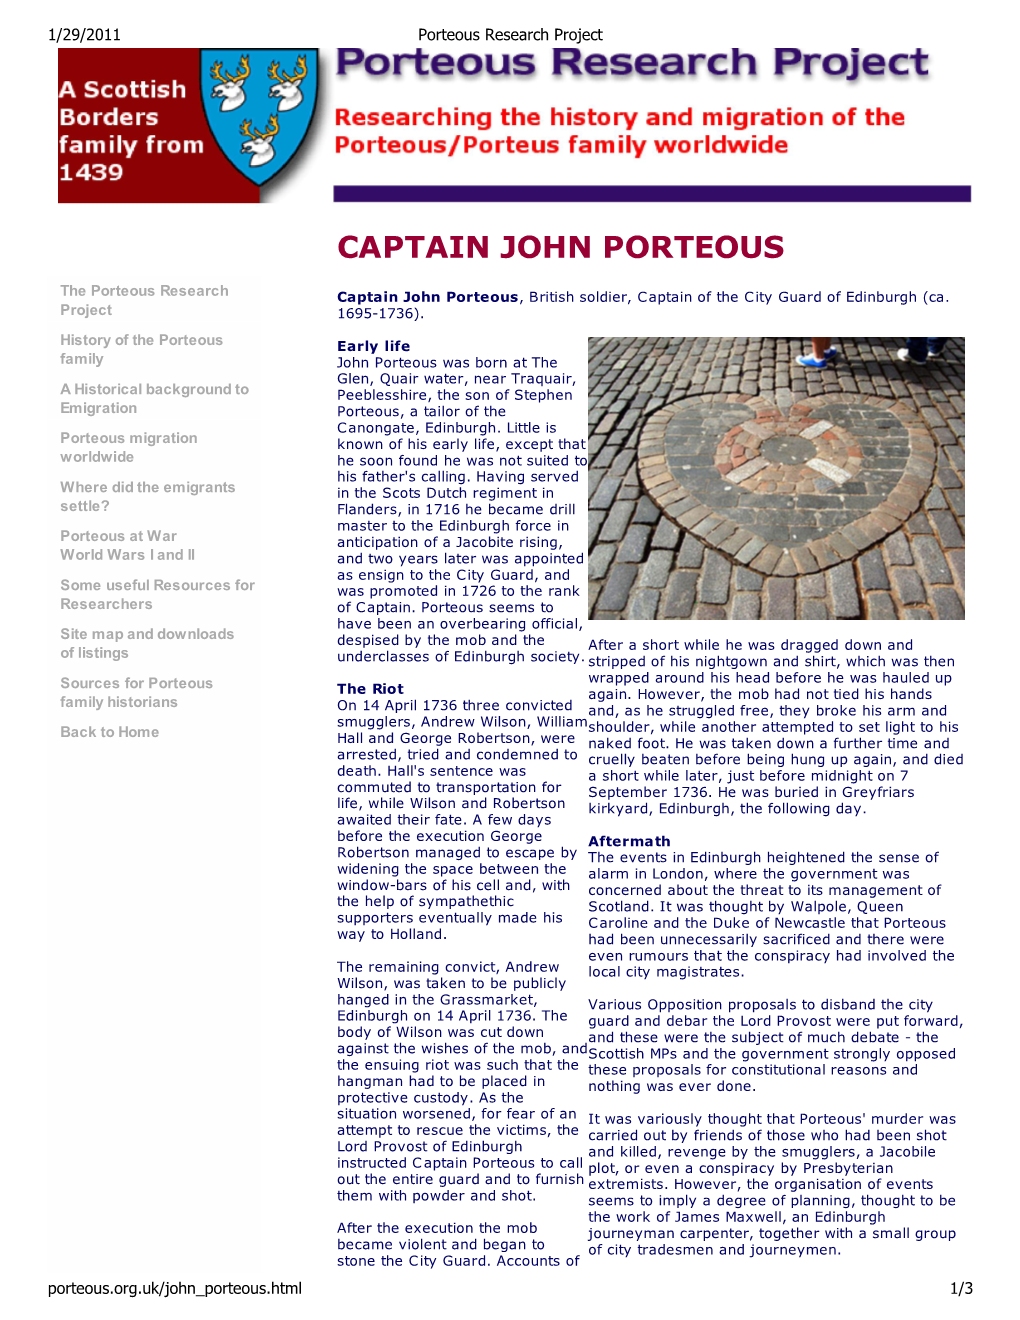 Captain John Porteous